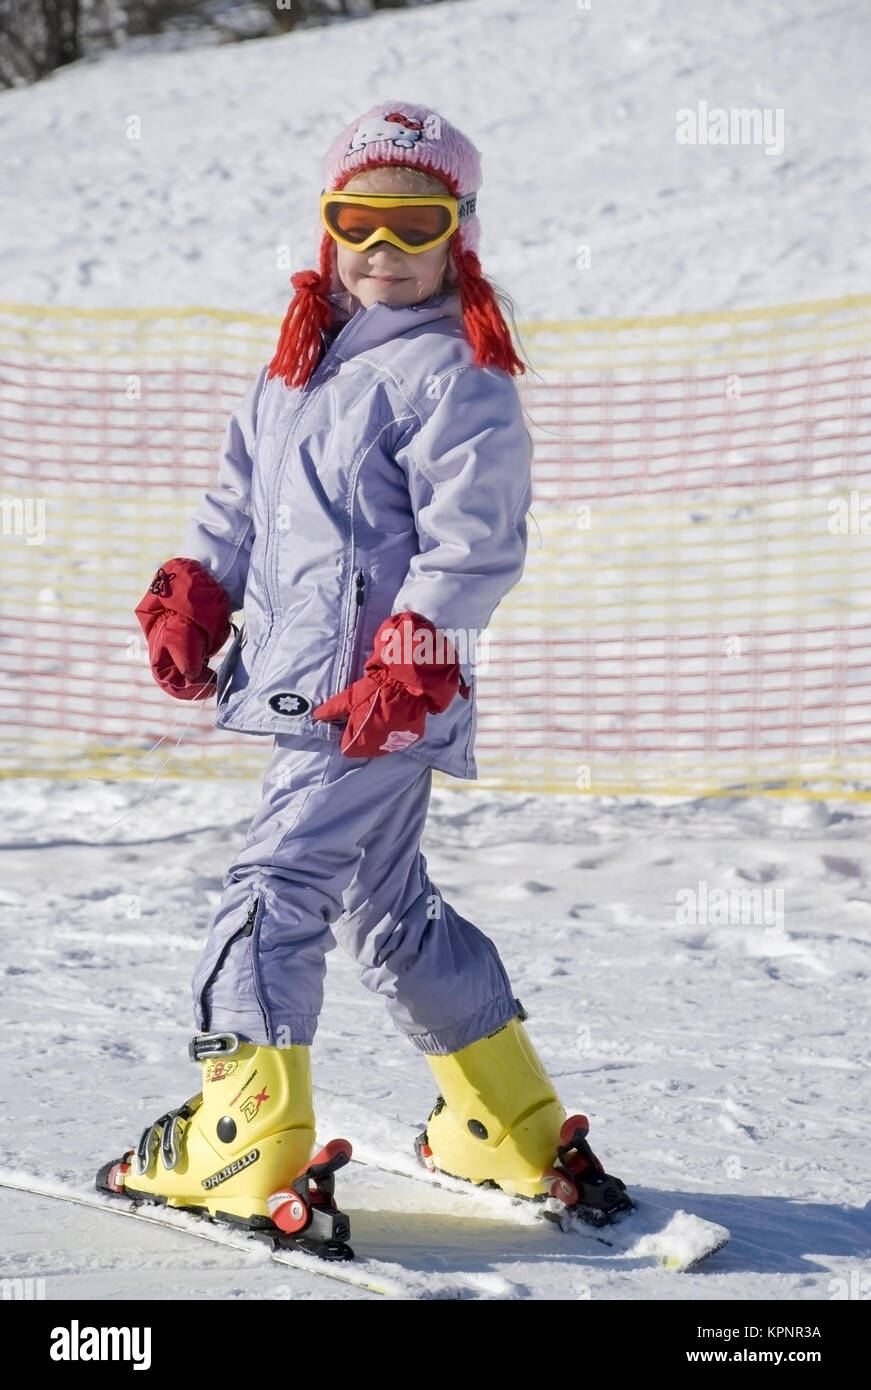 Model release , Maedchen, 7 Jahre, im Skioutfit auf der Skiposte - girl skiing Stock Photo